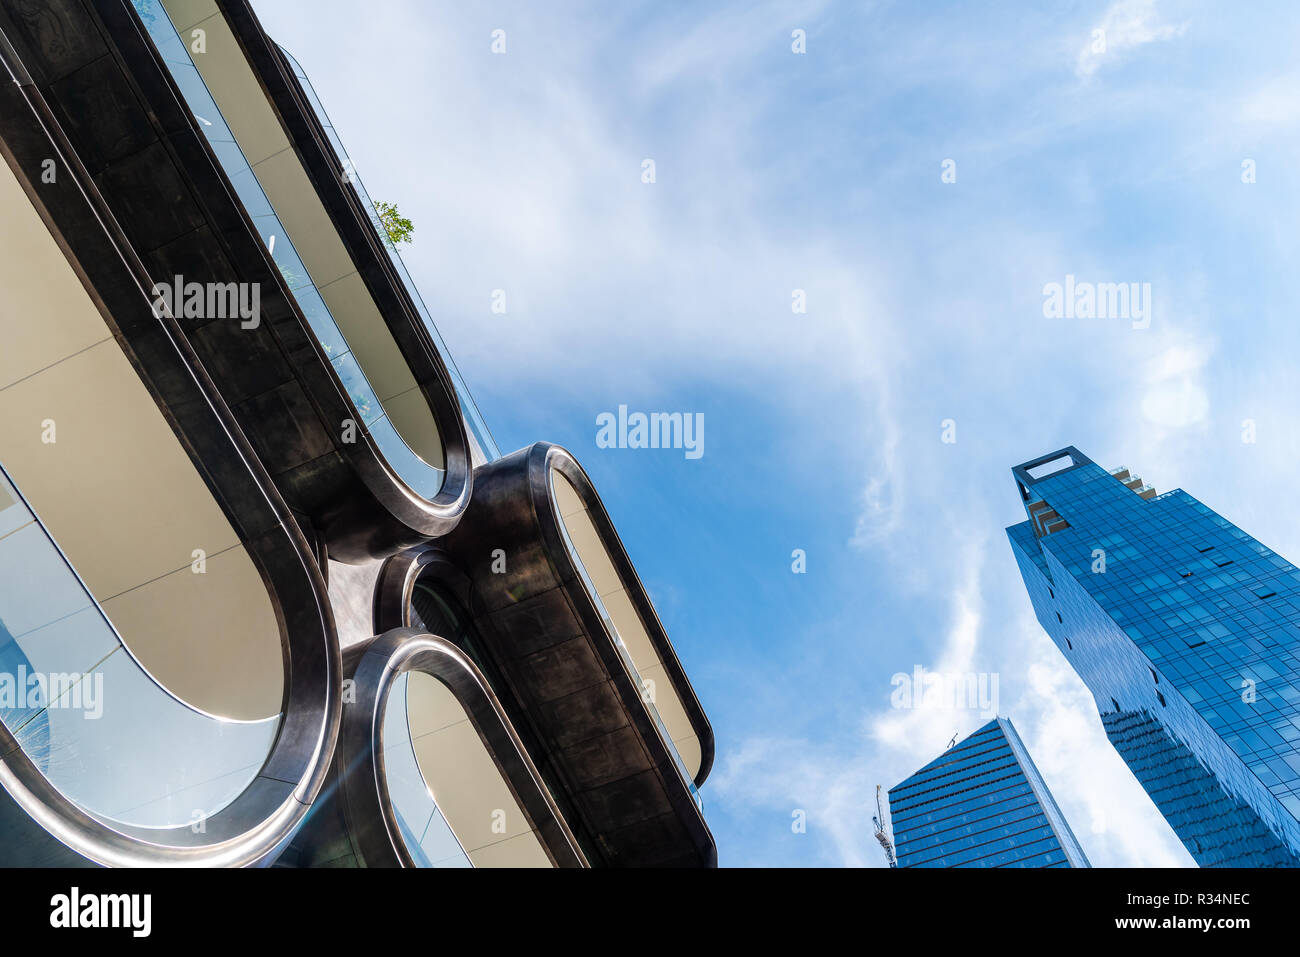 La ville de New York, USA - 22 juin 2018 : des résidences en copropriété, un bâtiment moderne conçu par Zaha Hadid Architects le long de la ligne haute Banque D'Images